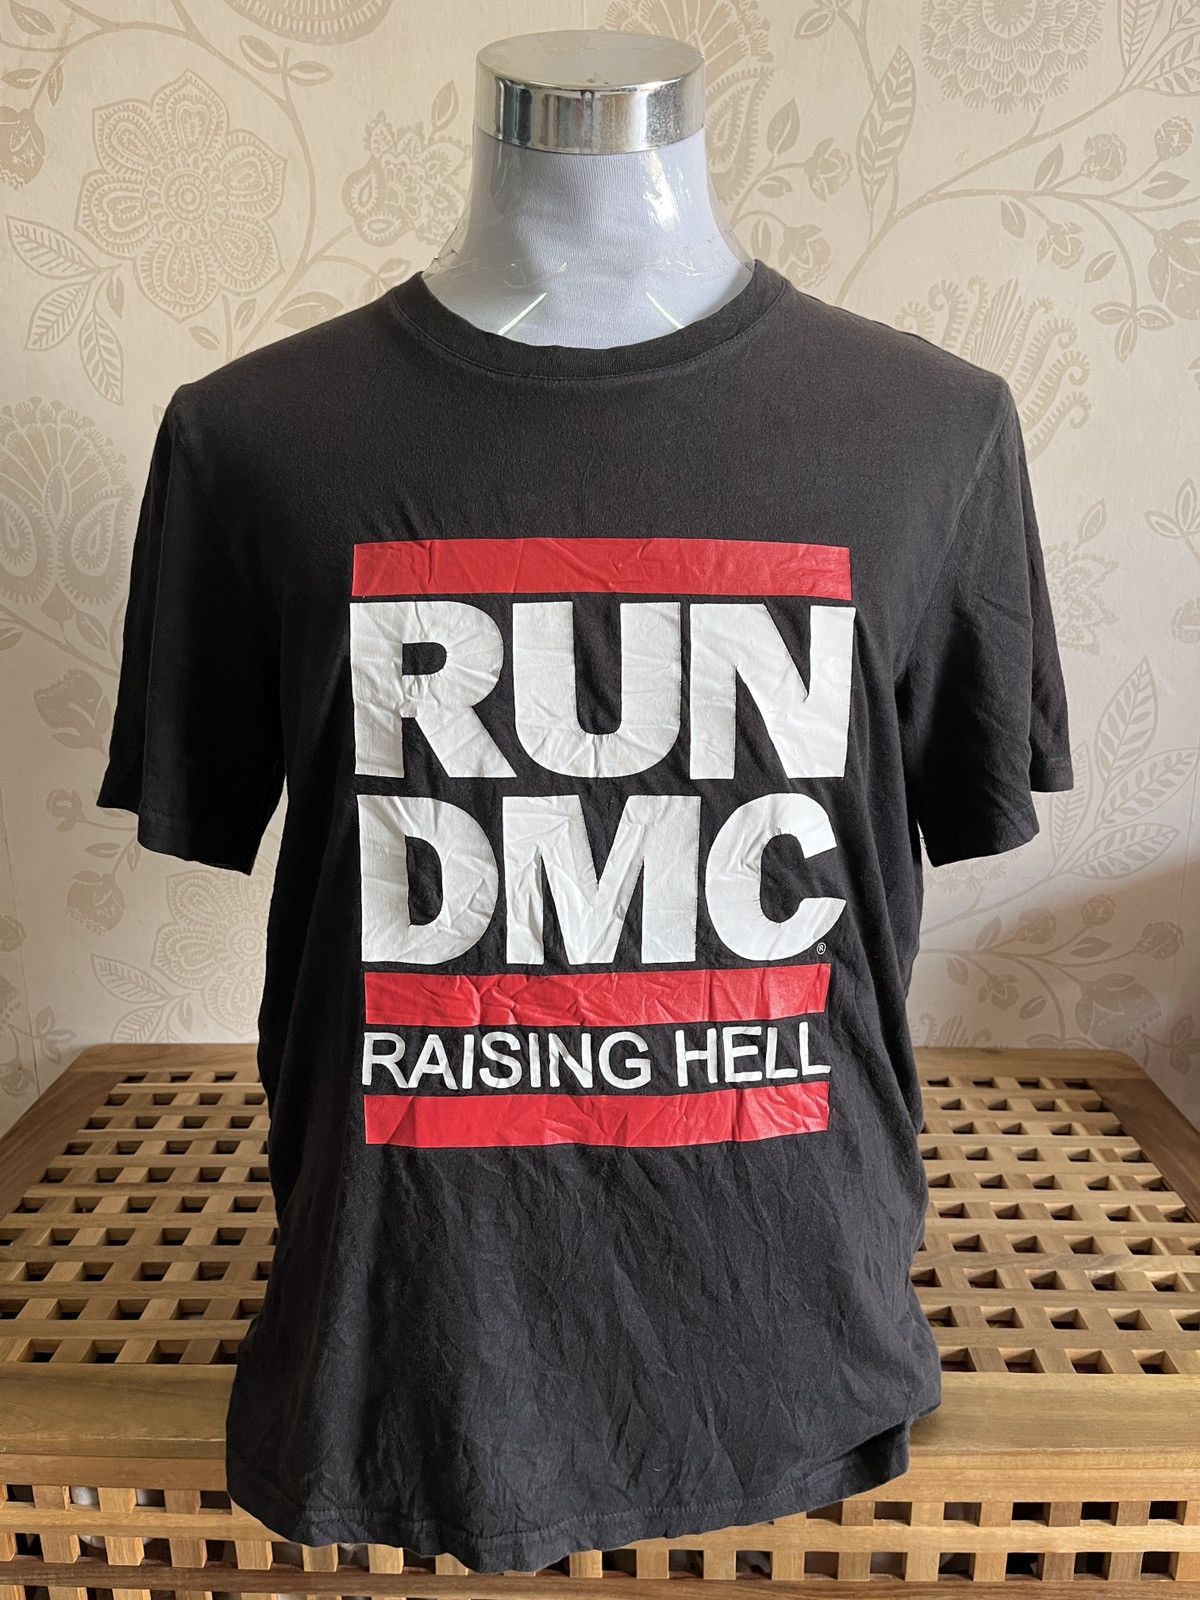 RUN DMC Raising Hell Rap Tees Black Copyright 2015 - 1